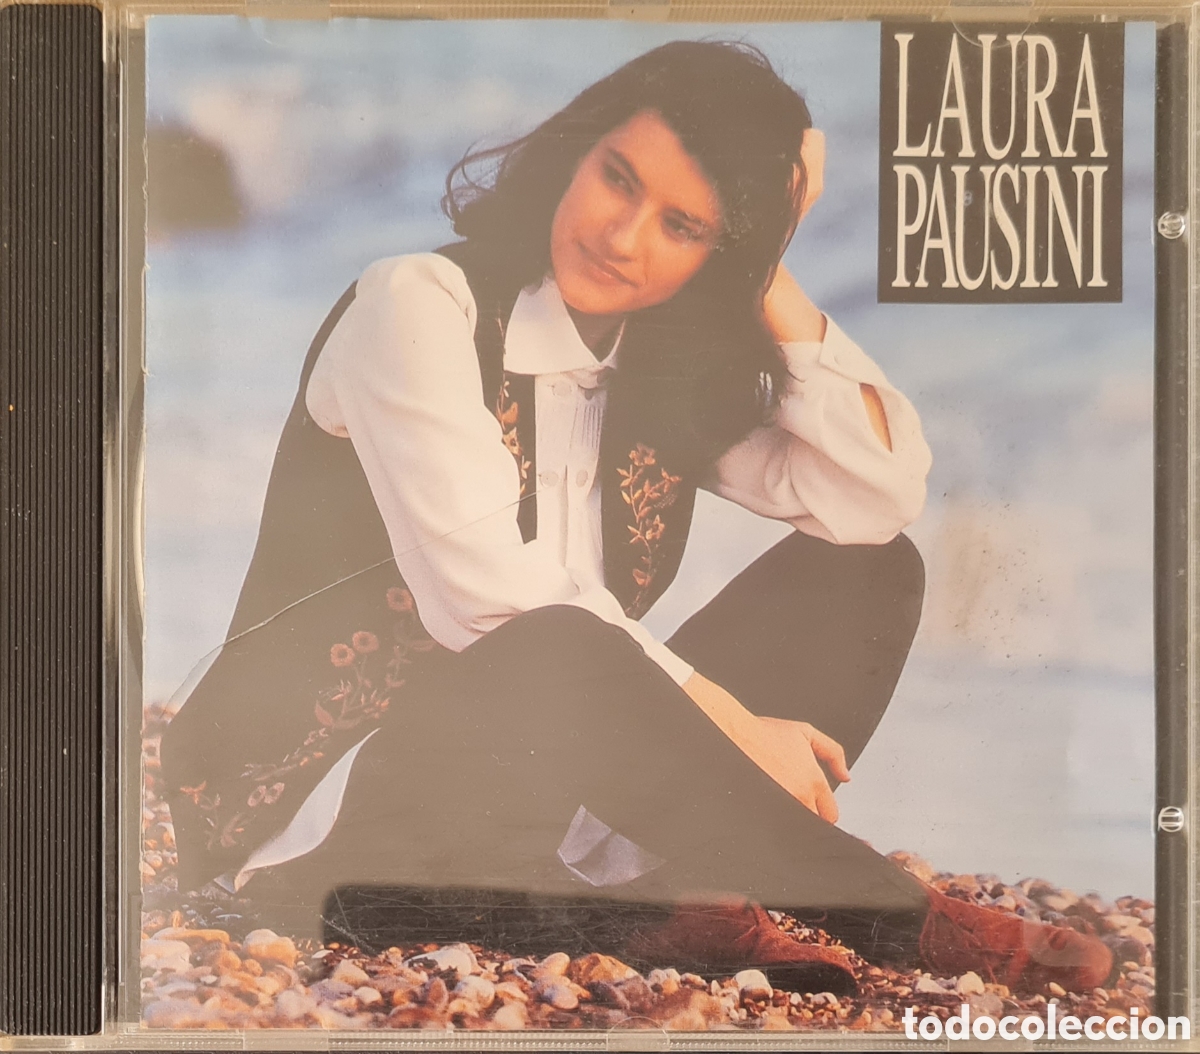 cd - laura pausini - laura pausini - 1994 - Acquista CD di altri stili  musicali su todocoleccion